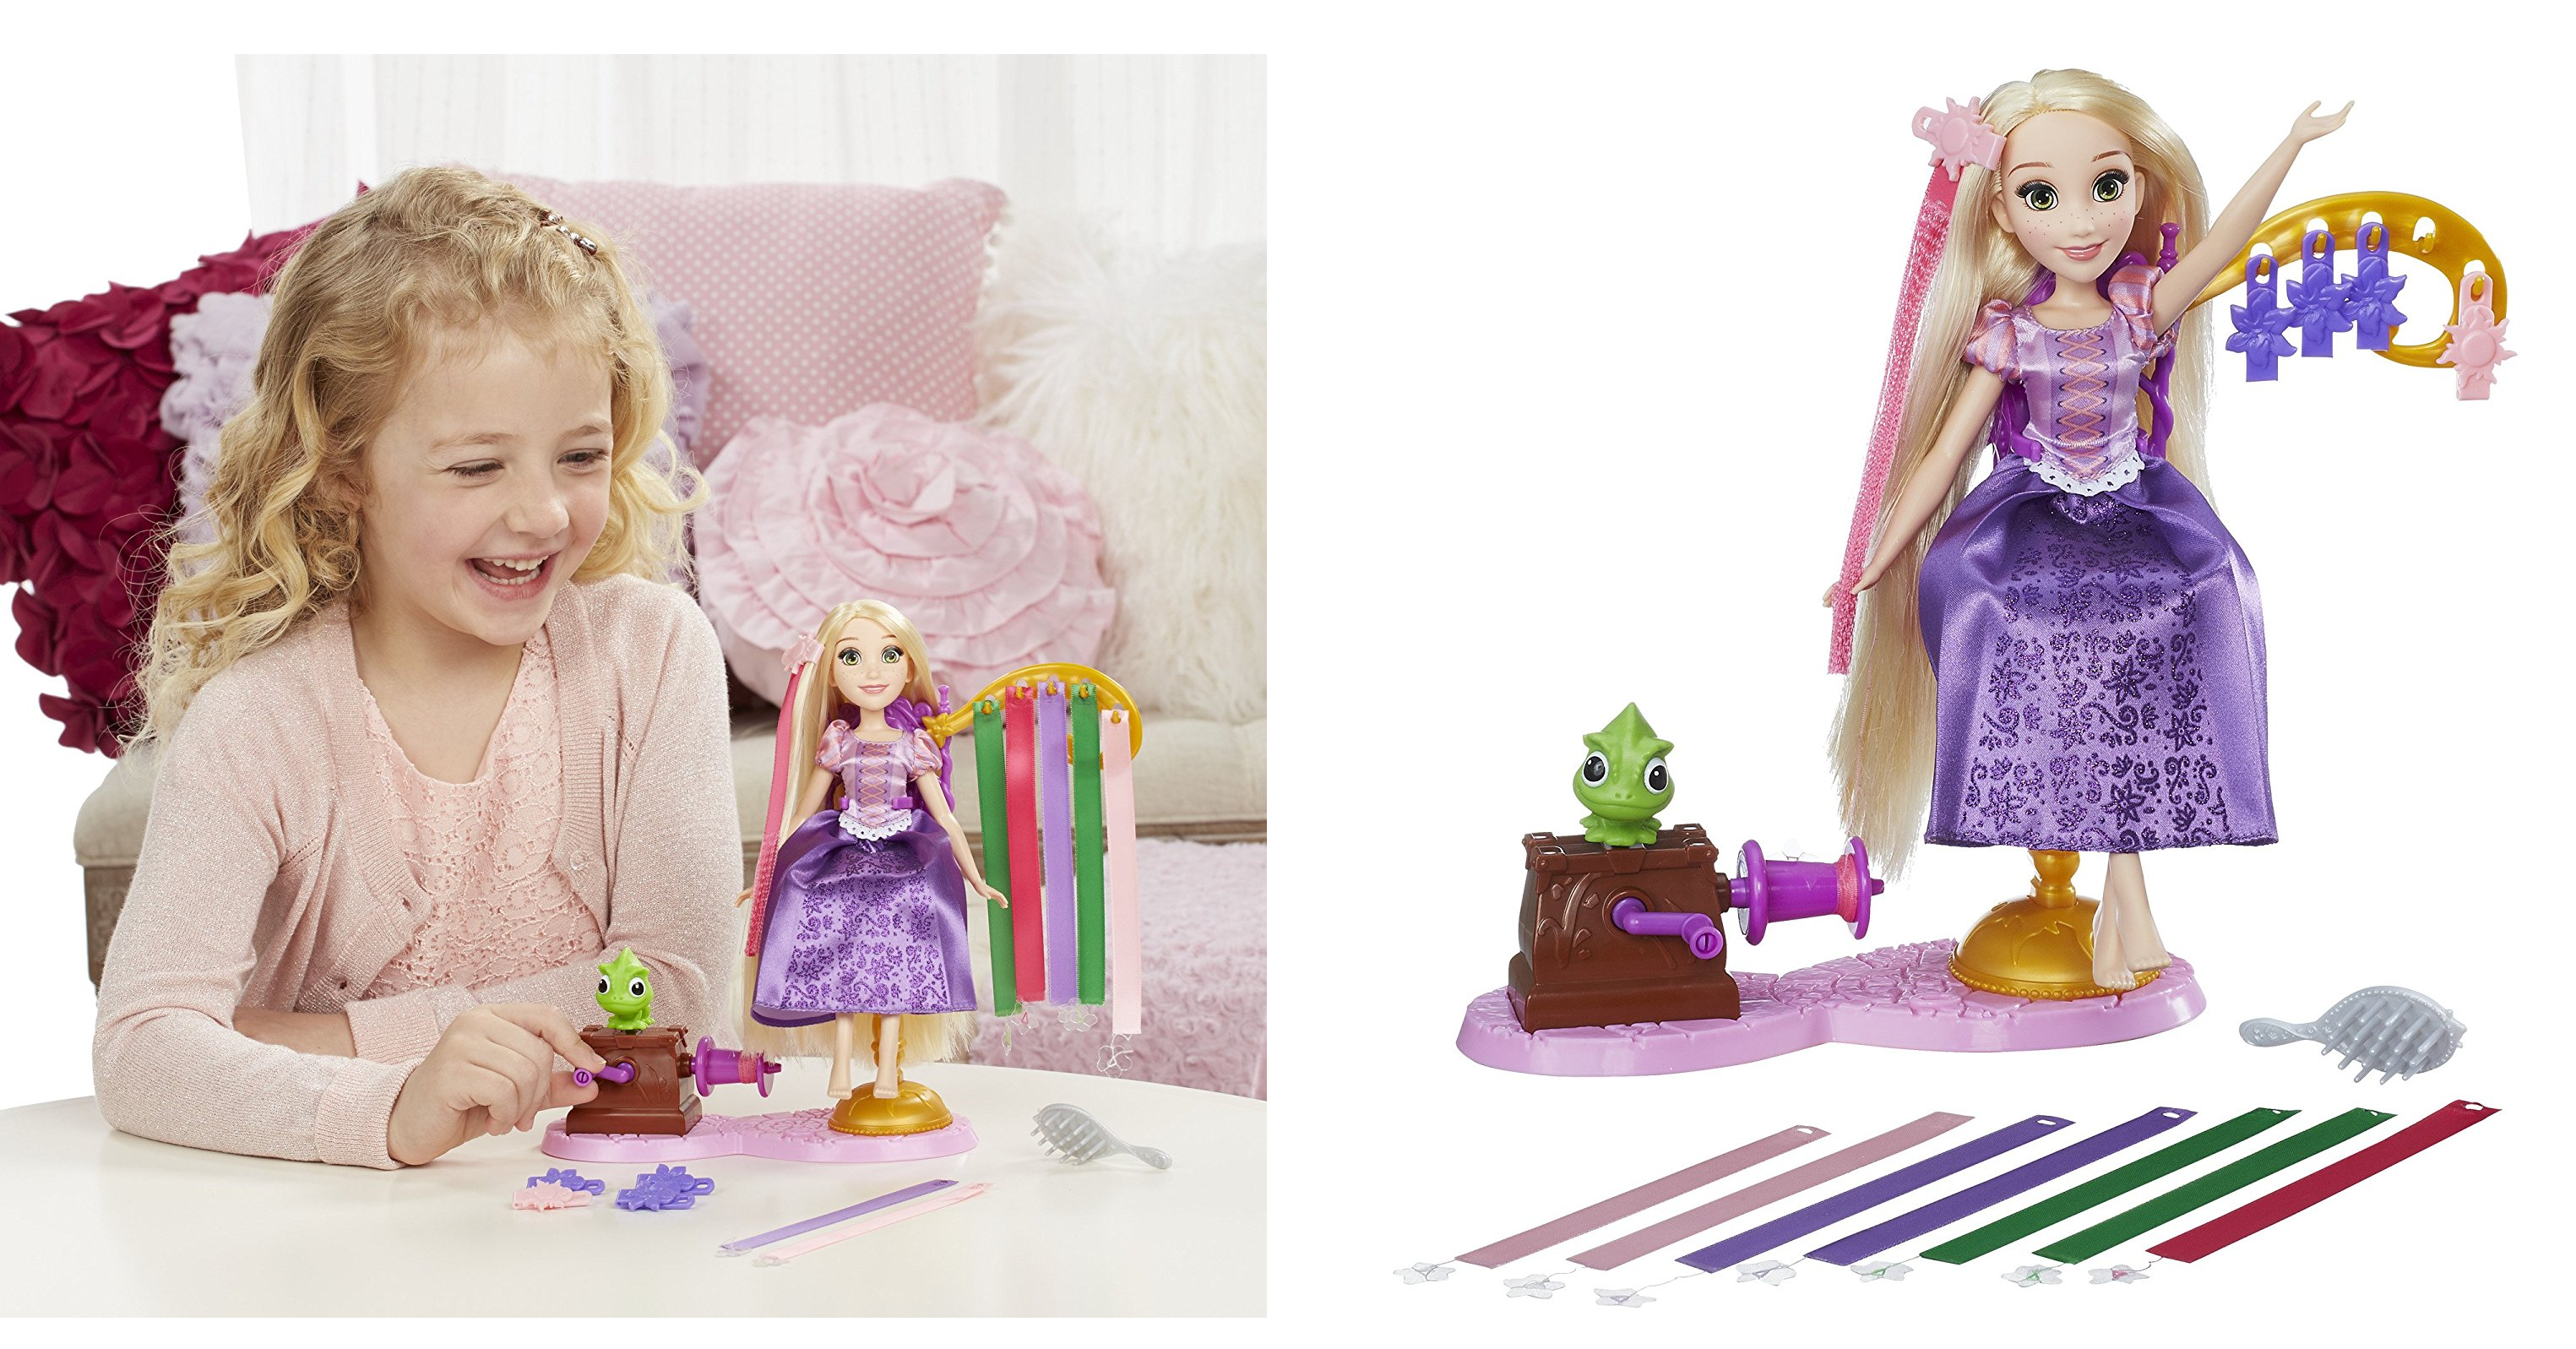 Disney Princess Rapunzel’s Royal Ribbon Salon is ONLY $12.16!